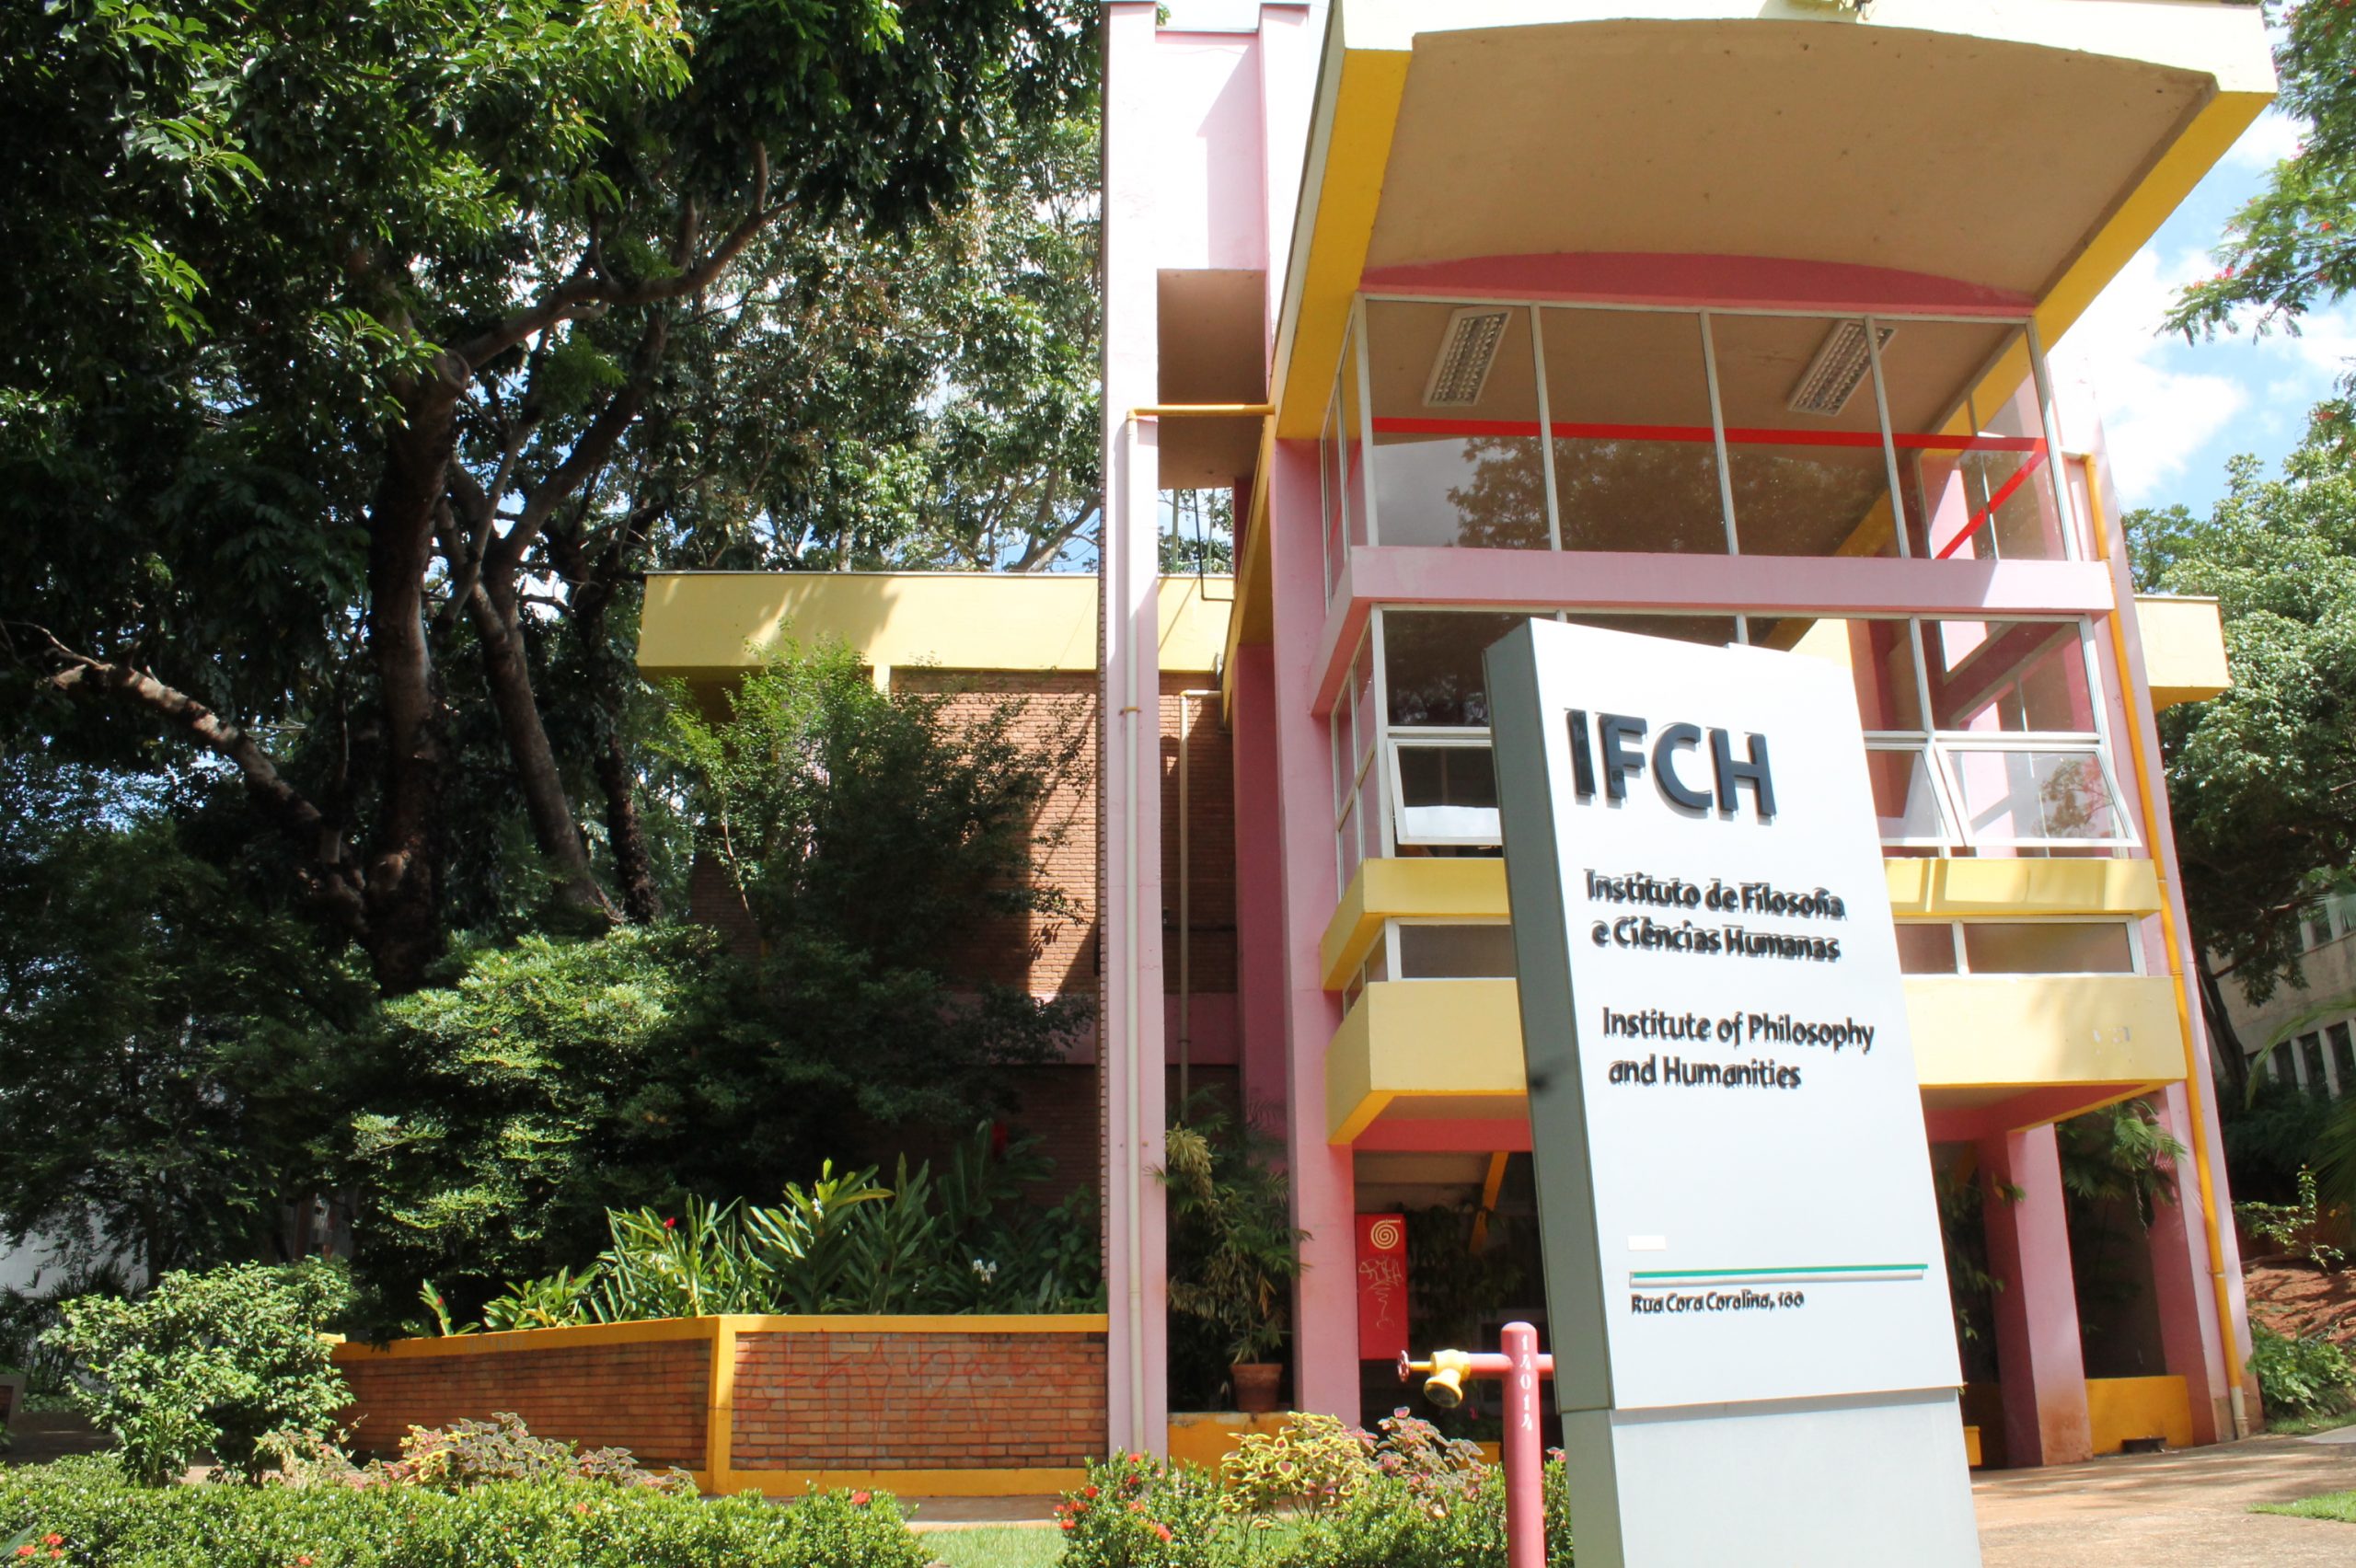 O IFCH - Instituto de Filosofia e Ciências Humanas